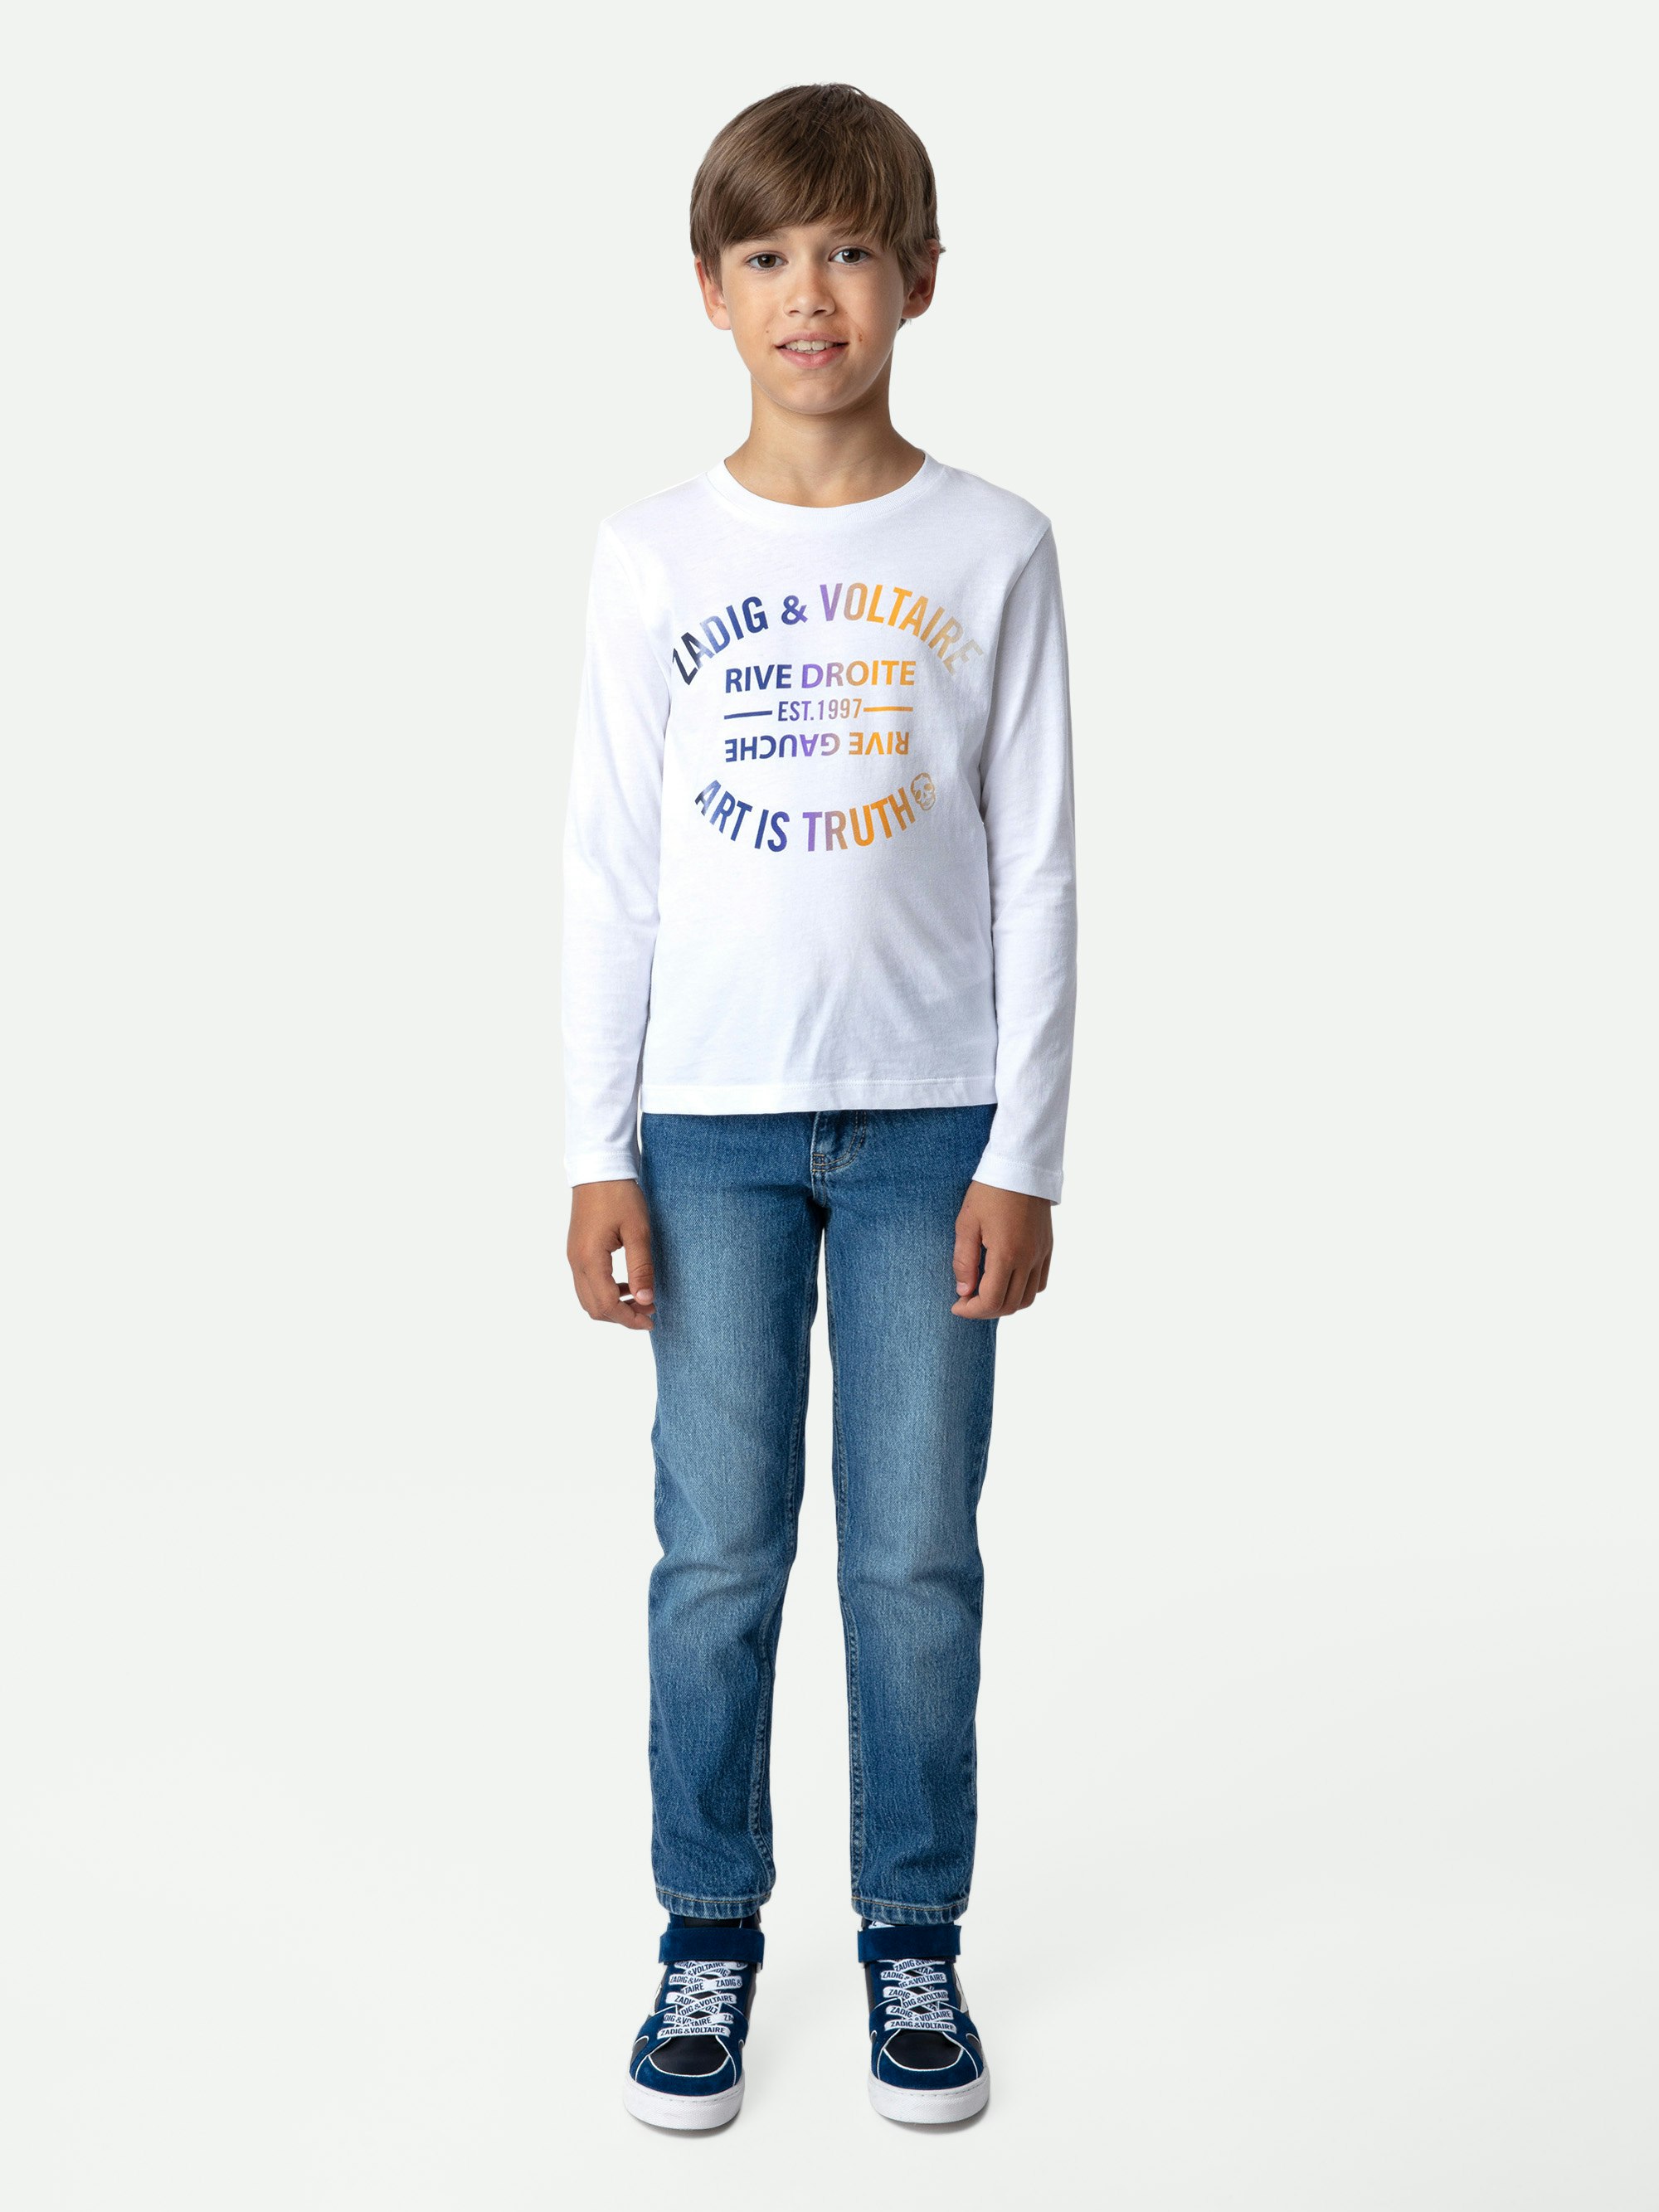 T-shirt Kita Garçon - T-shirt à manches longues en jersey coton blanc orné du blason garçon.